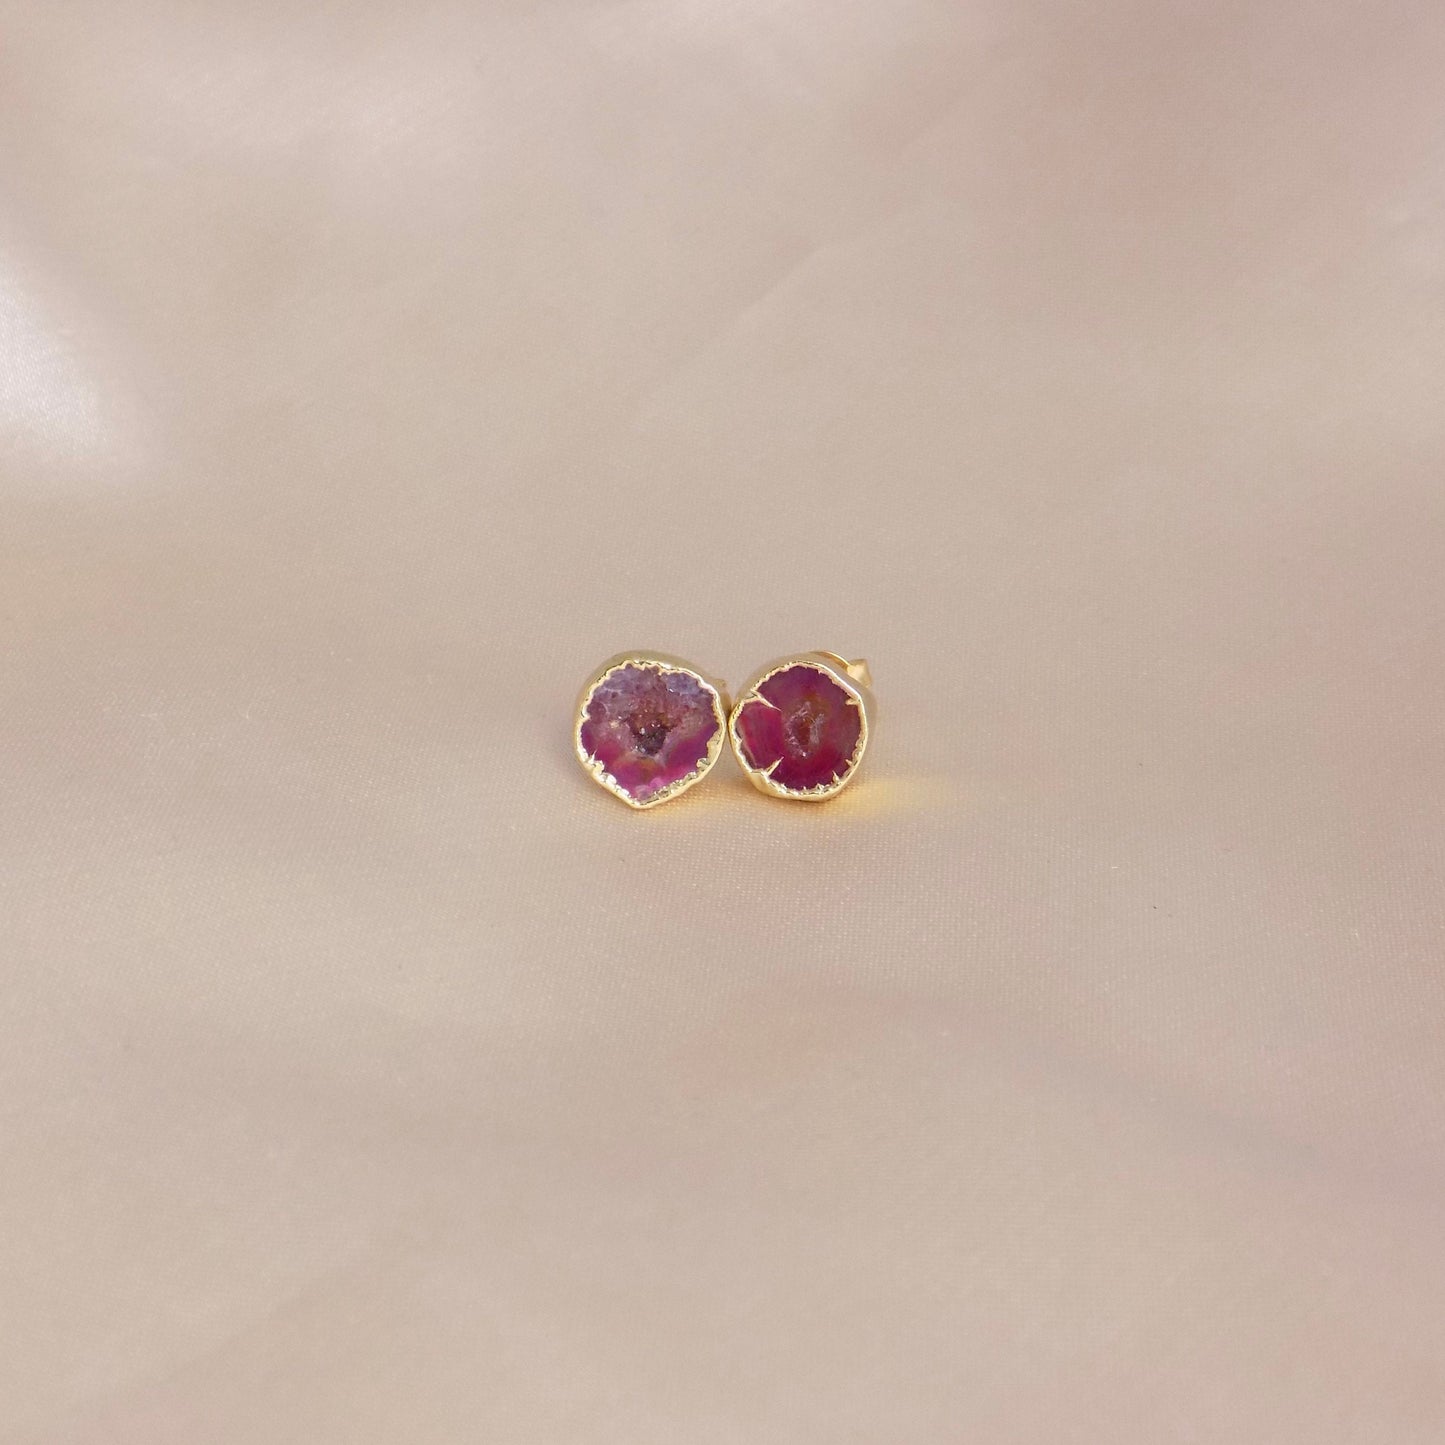 Bridesmaid Gift - Pink Geode Earrings Studs